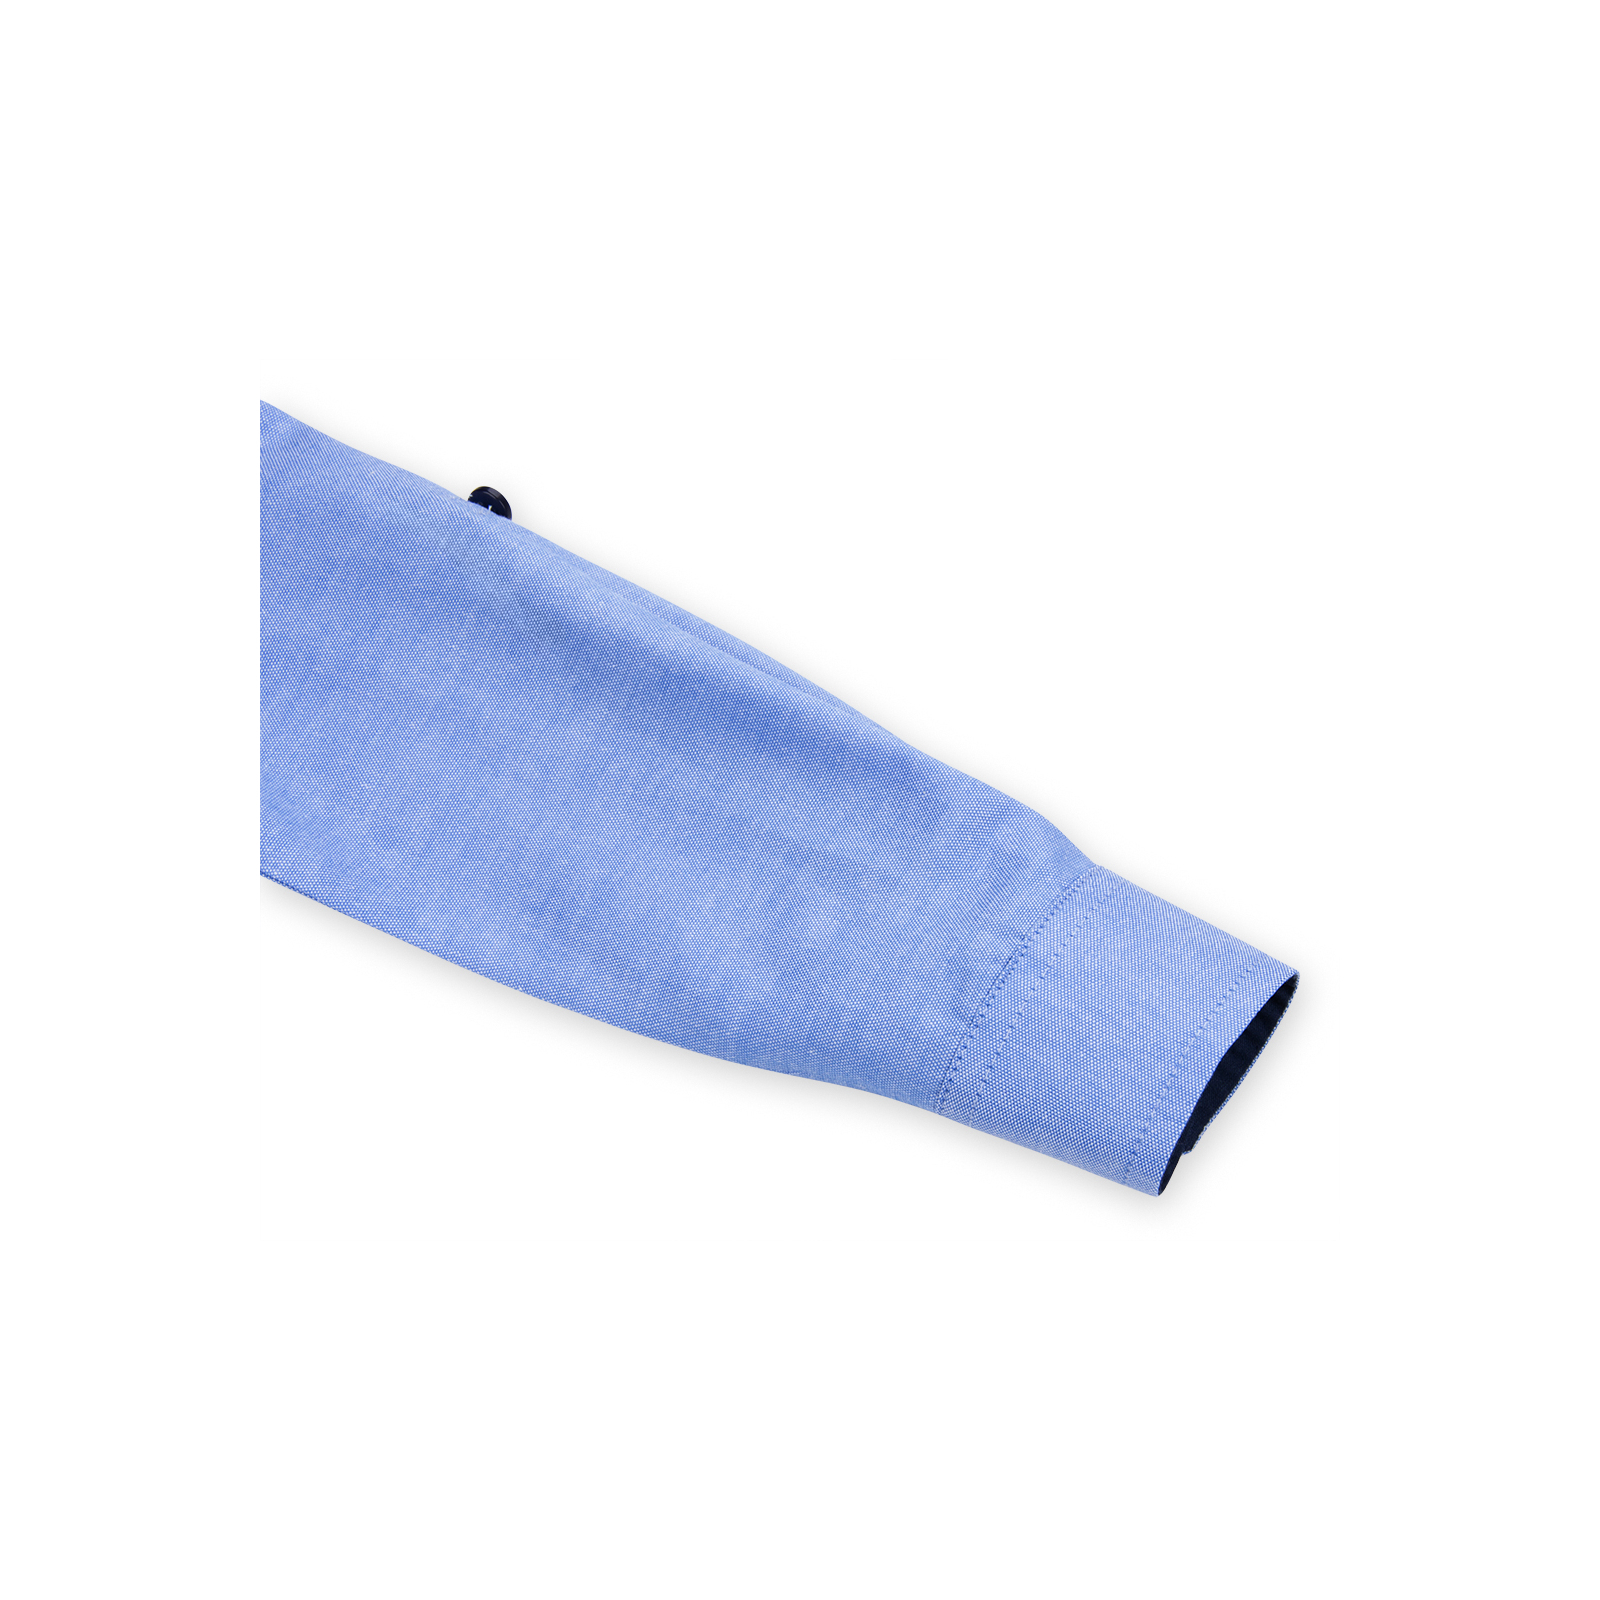 Рубашка Breeze голубая (G-218-86B-blue) изображение 5